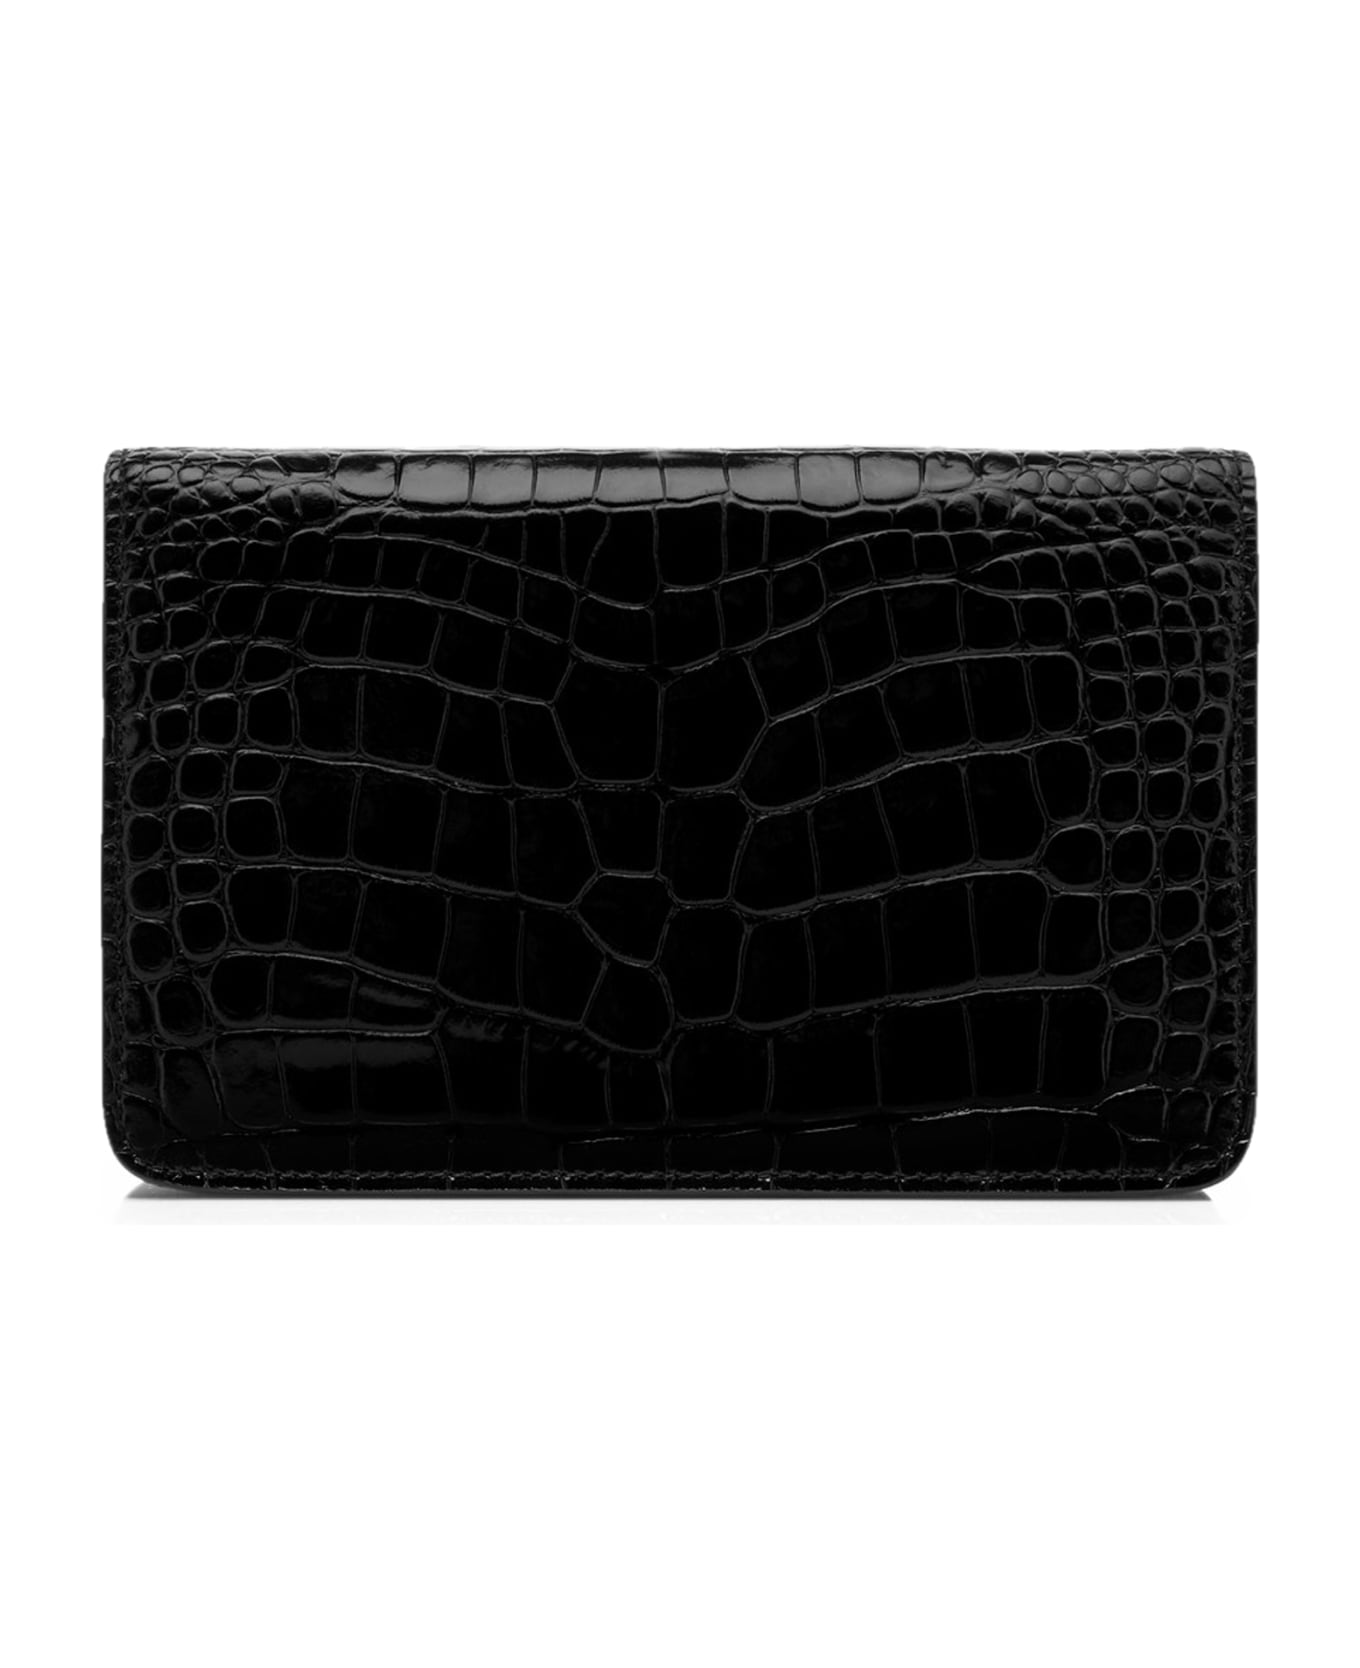 Tom Ford Shiny Stamped Croc Small Shoulder Bag - Black